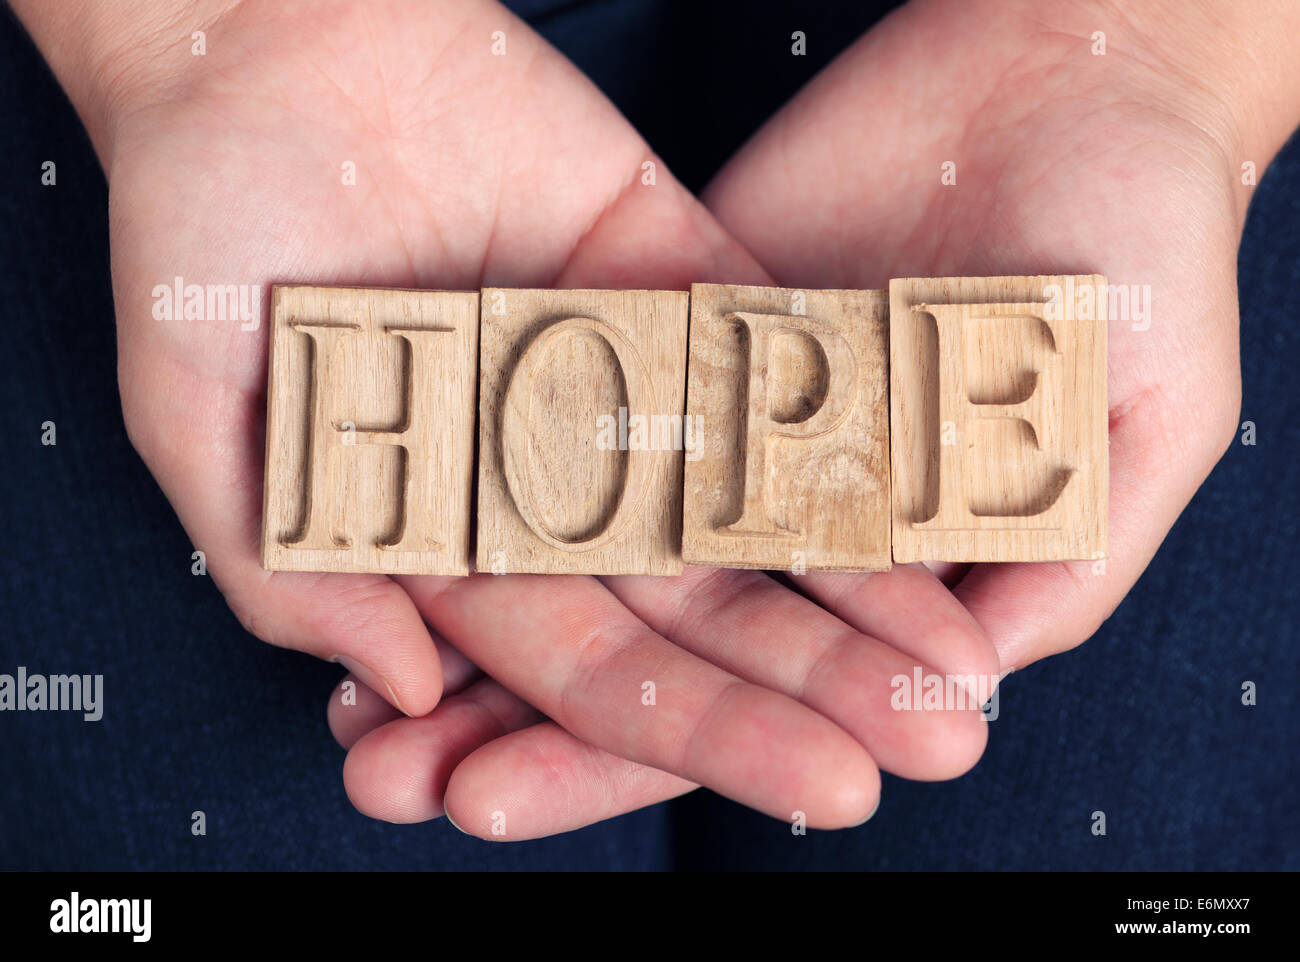 La parola "speranza" enunciato in rilievografia lettere nella donna con le mani in mano. Foto Stock